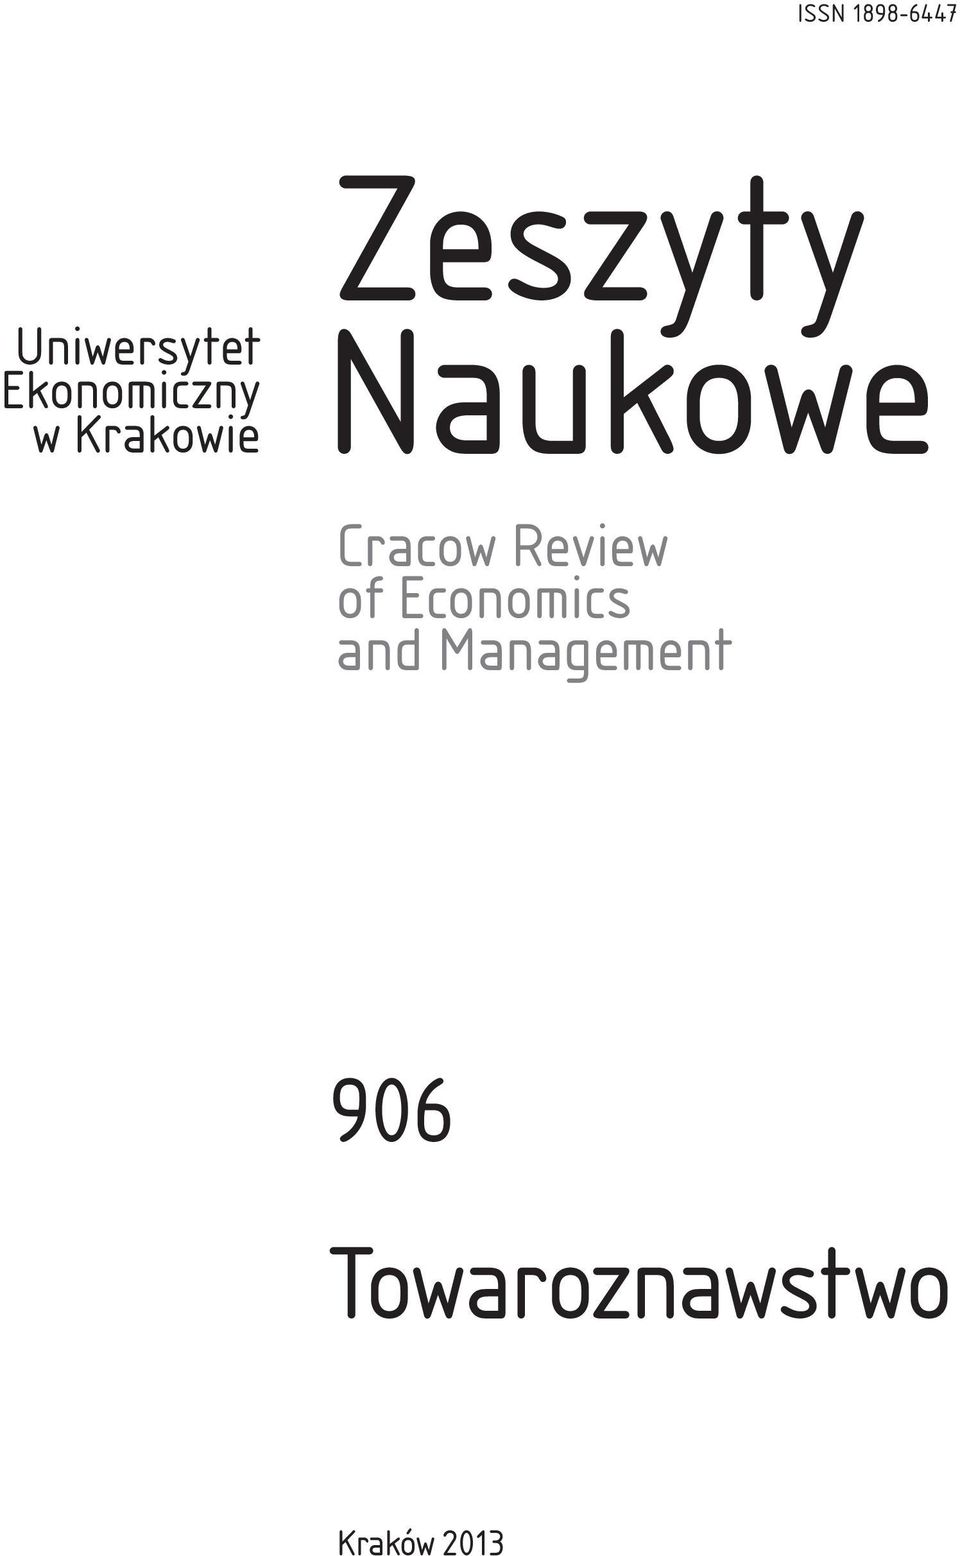 Naukowe Cracow Review of Economics